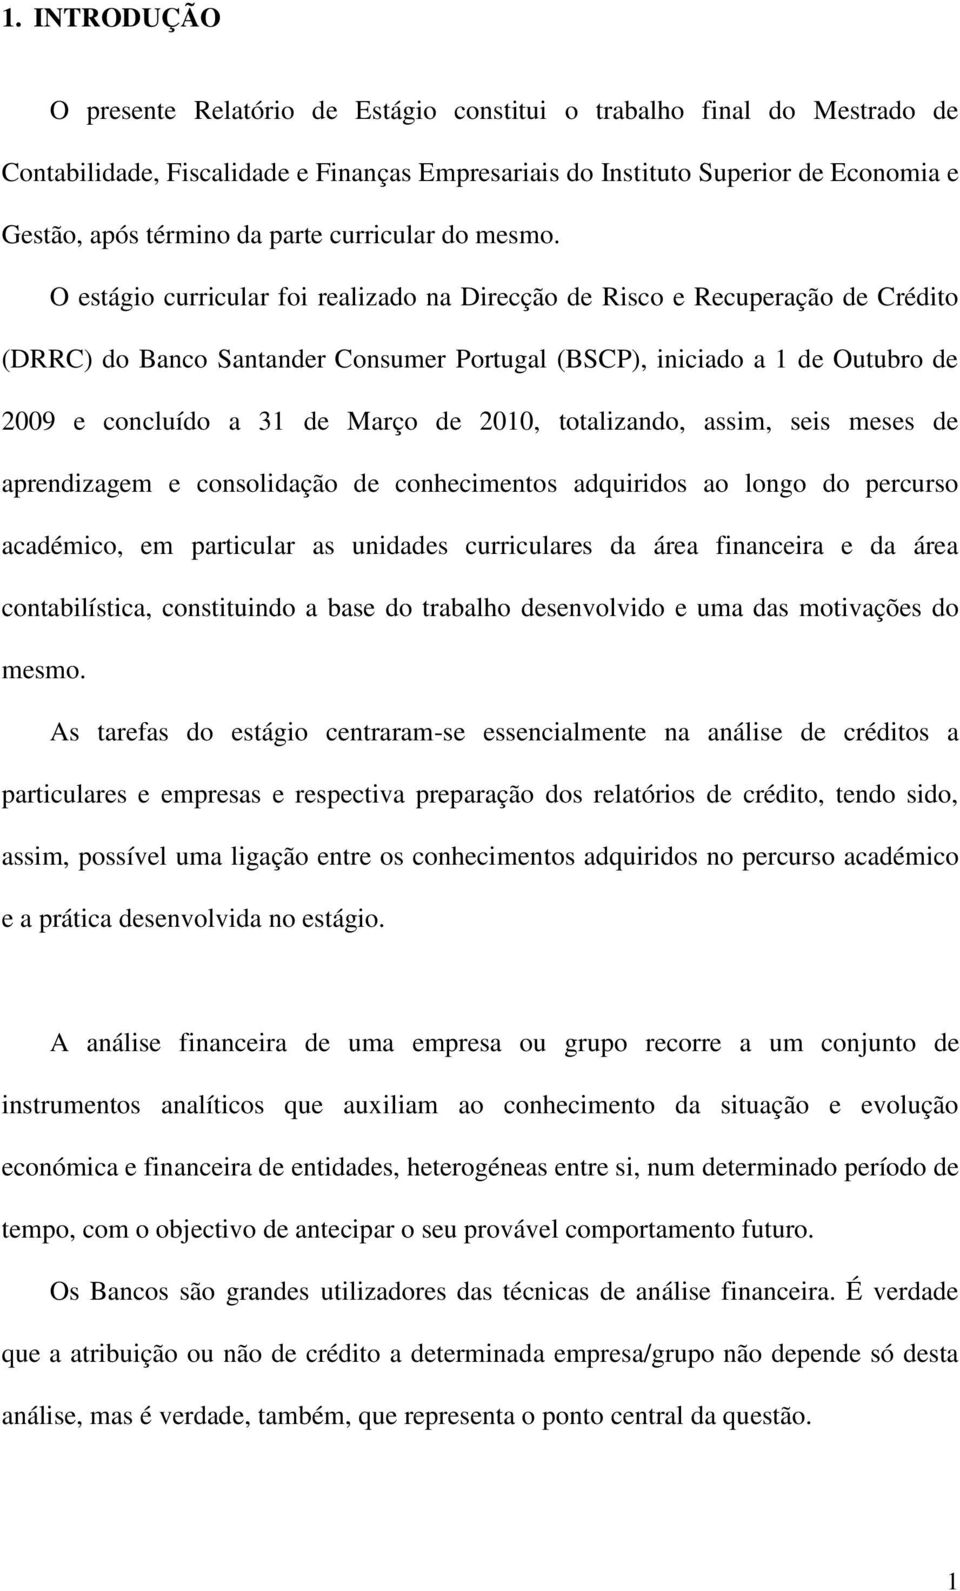 O estágio curricular foi realizado na Direcção de Risco e Recuperação de Crédito (DRRC) do Banco Santander Consumer Portugal (BSCP), iniciado a 1 de Outubro de 2009 e concluído a 31 de Março de 2010,